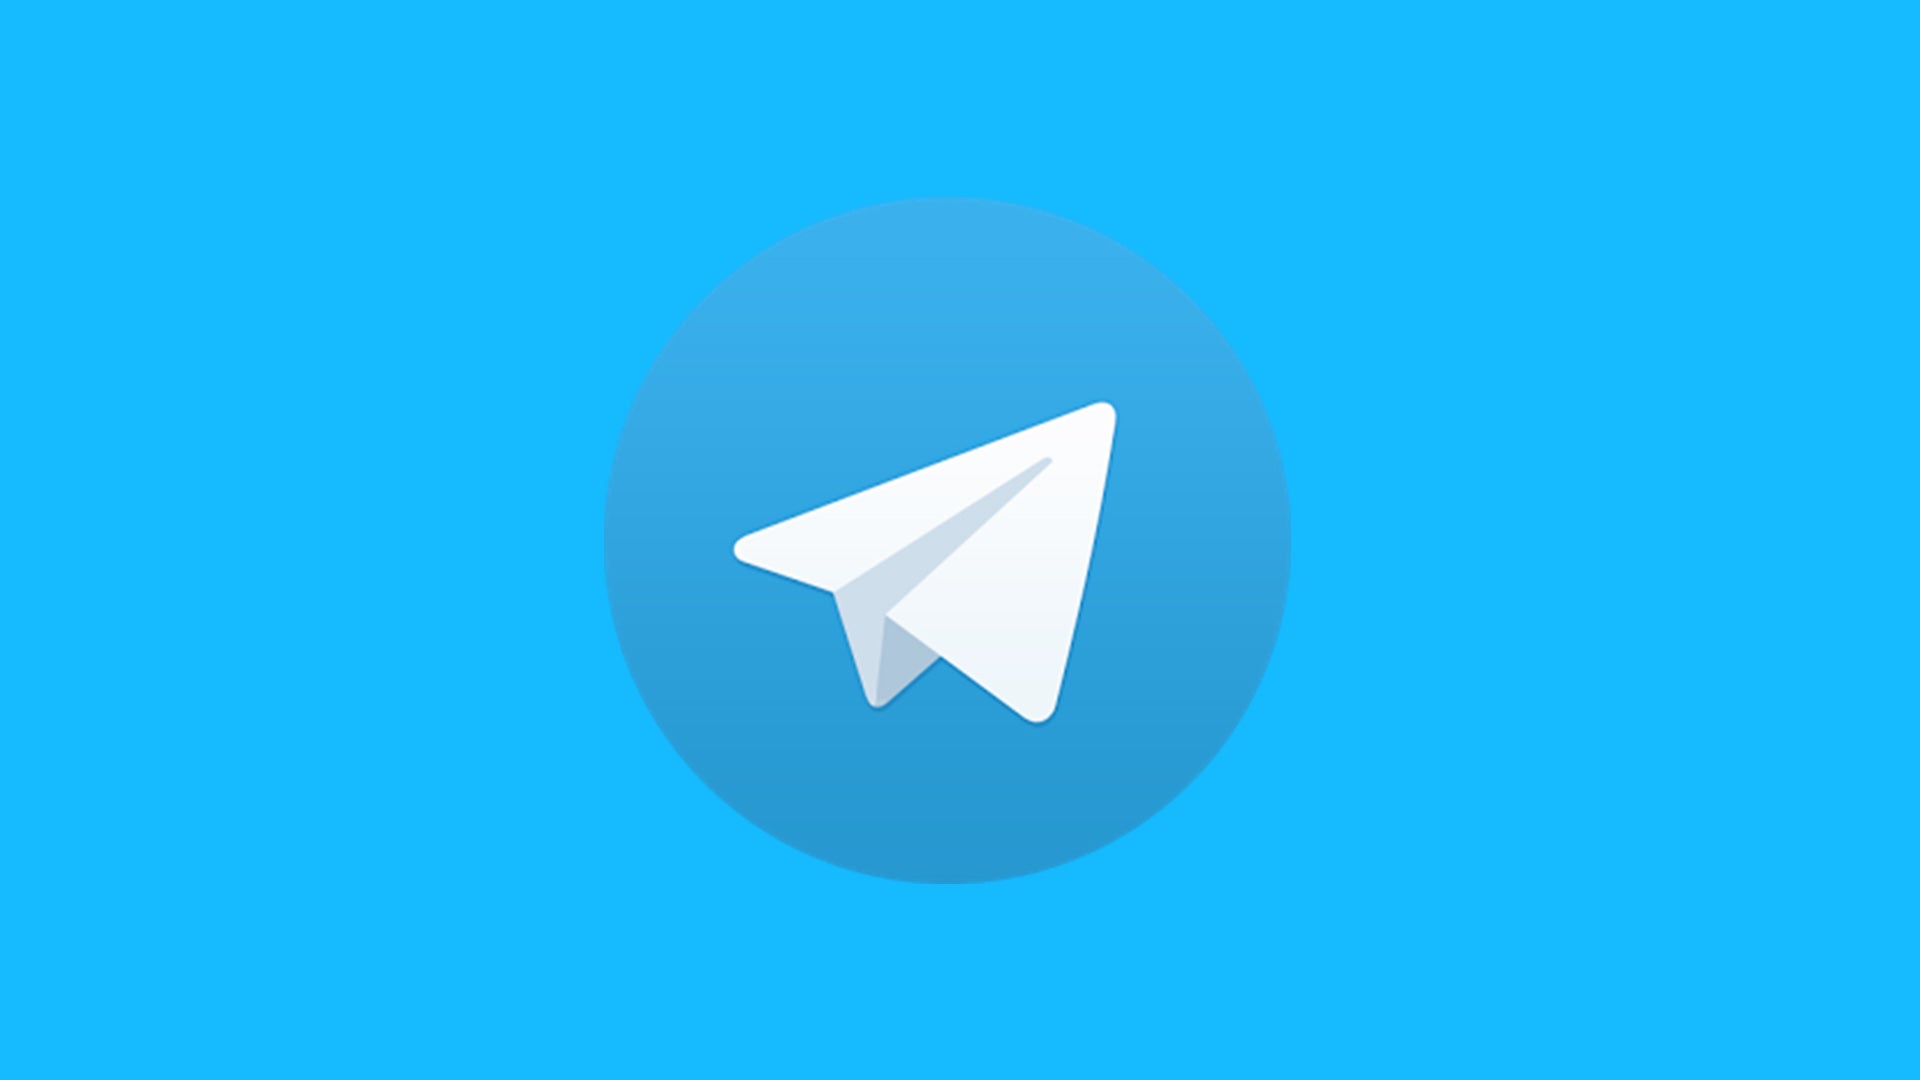 拓展您的网络影响力 | Telegram账号购买平台探索与分析